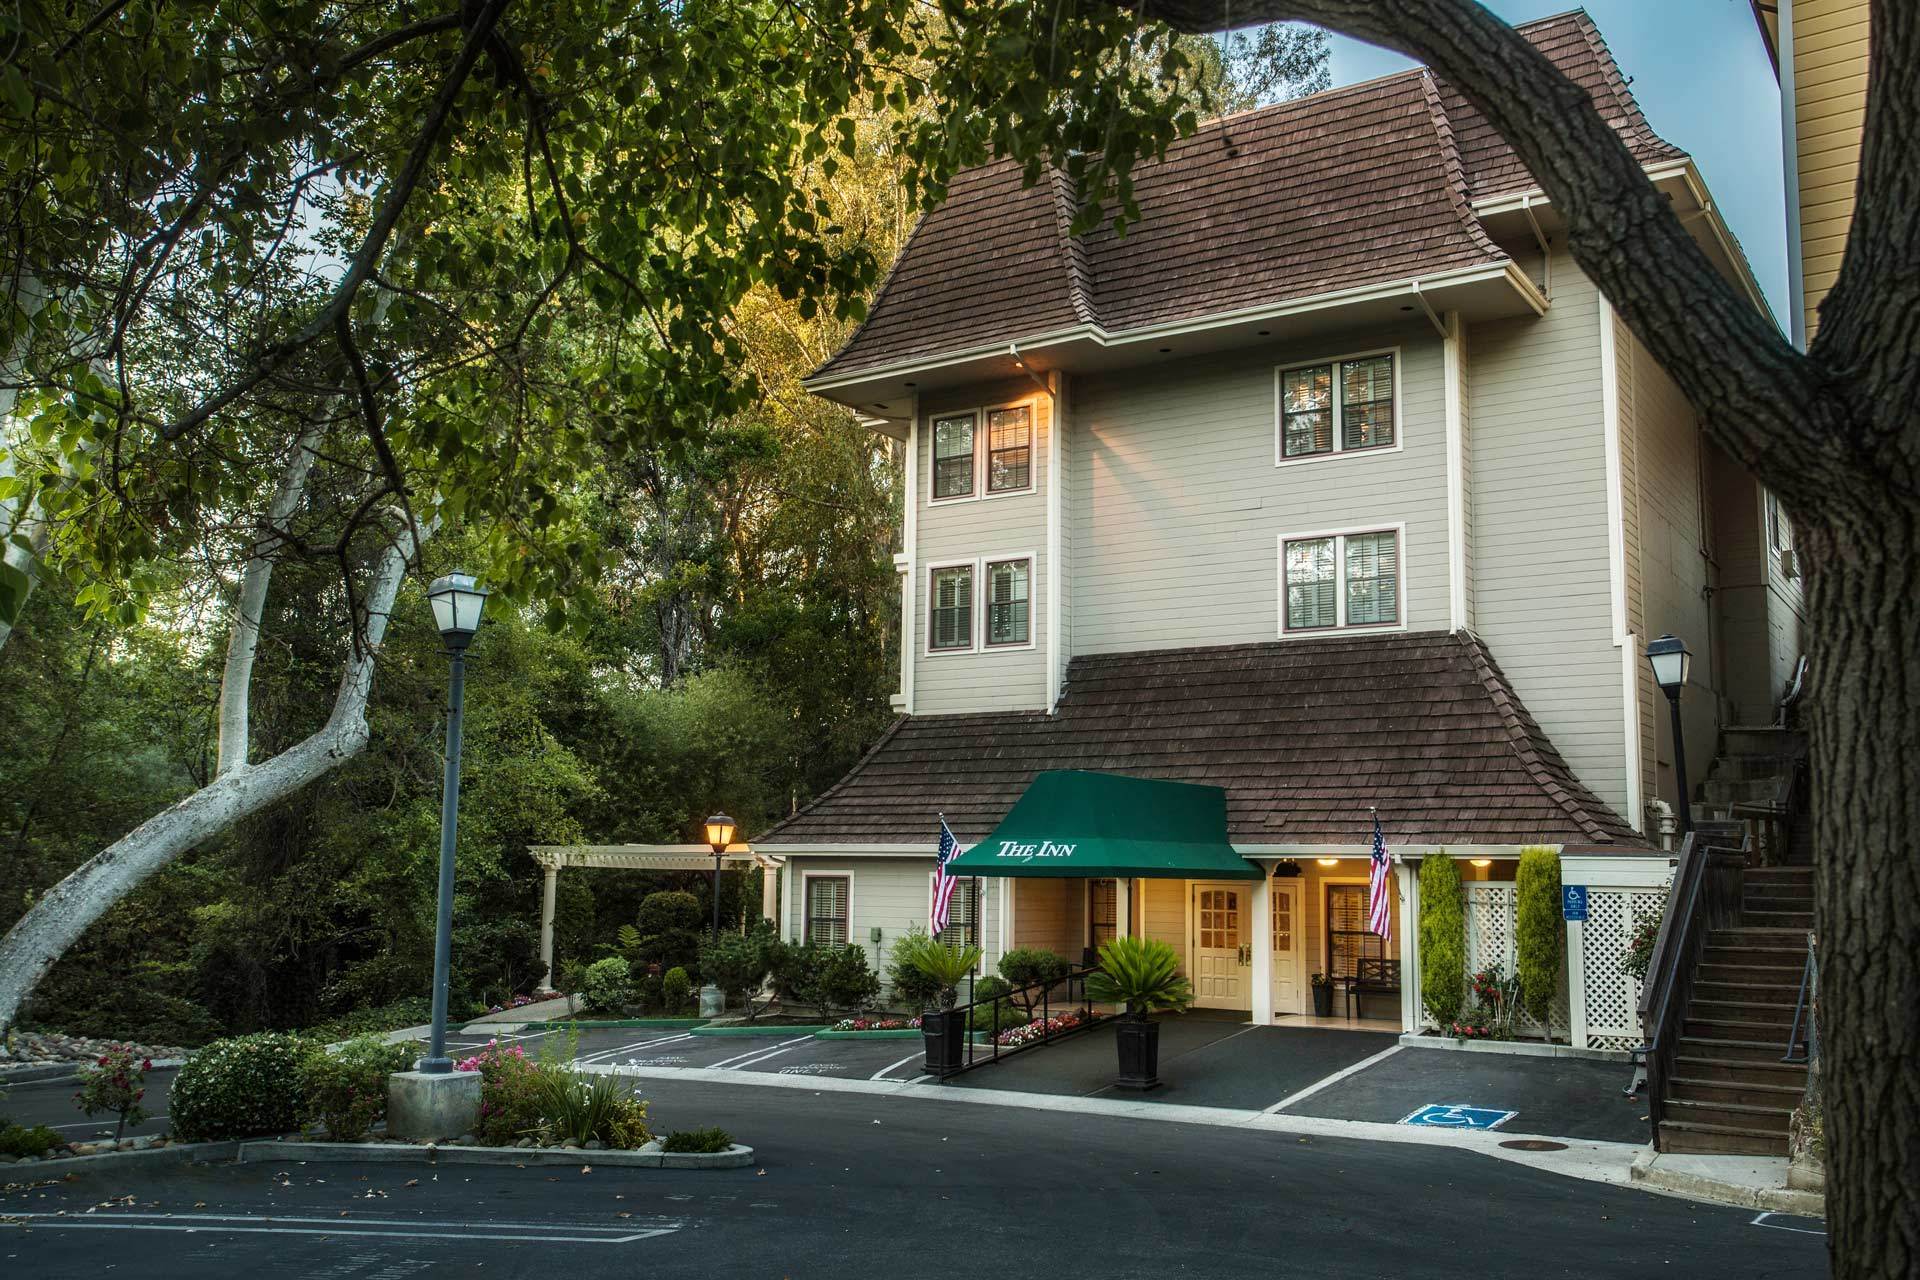 Photo of The Inn at Saratoga, Saratoga, CA